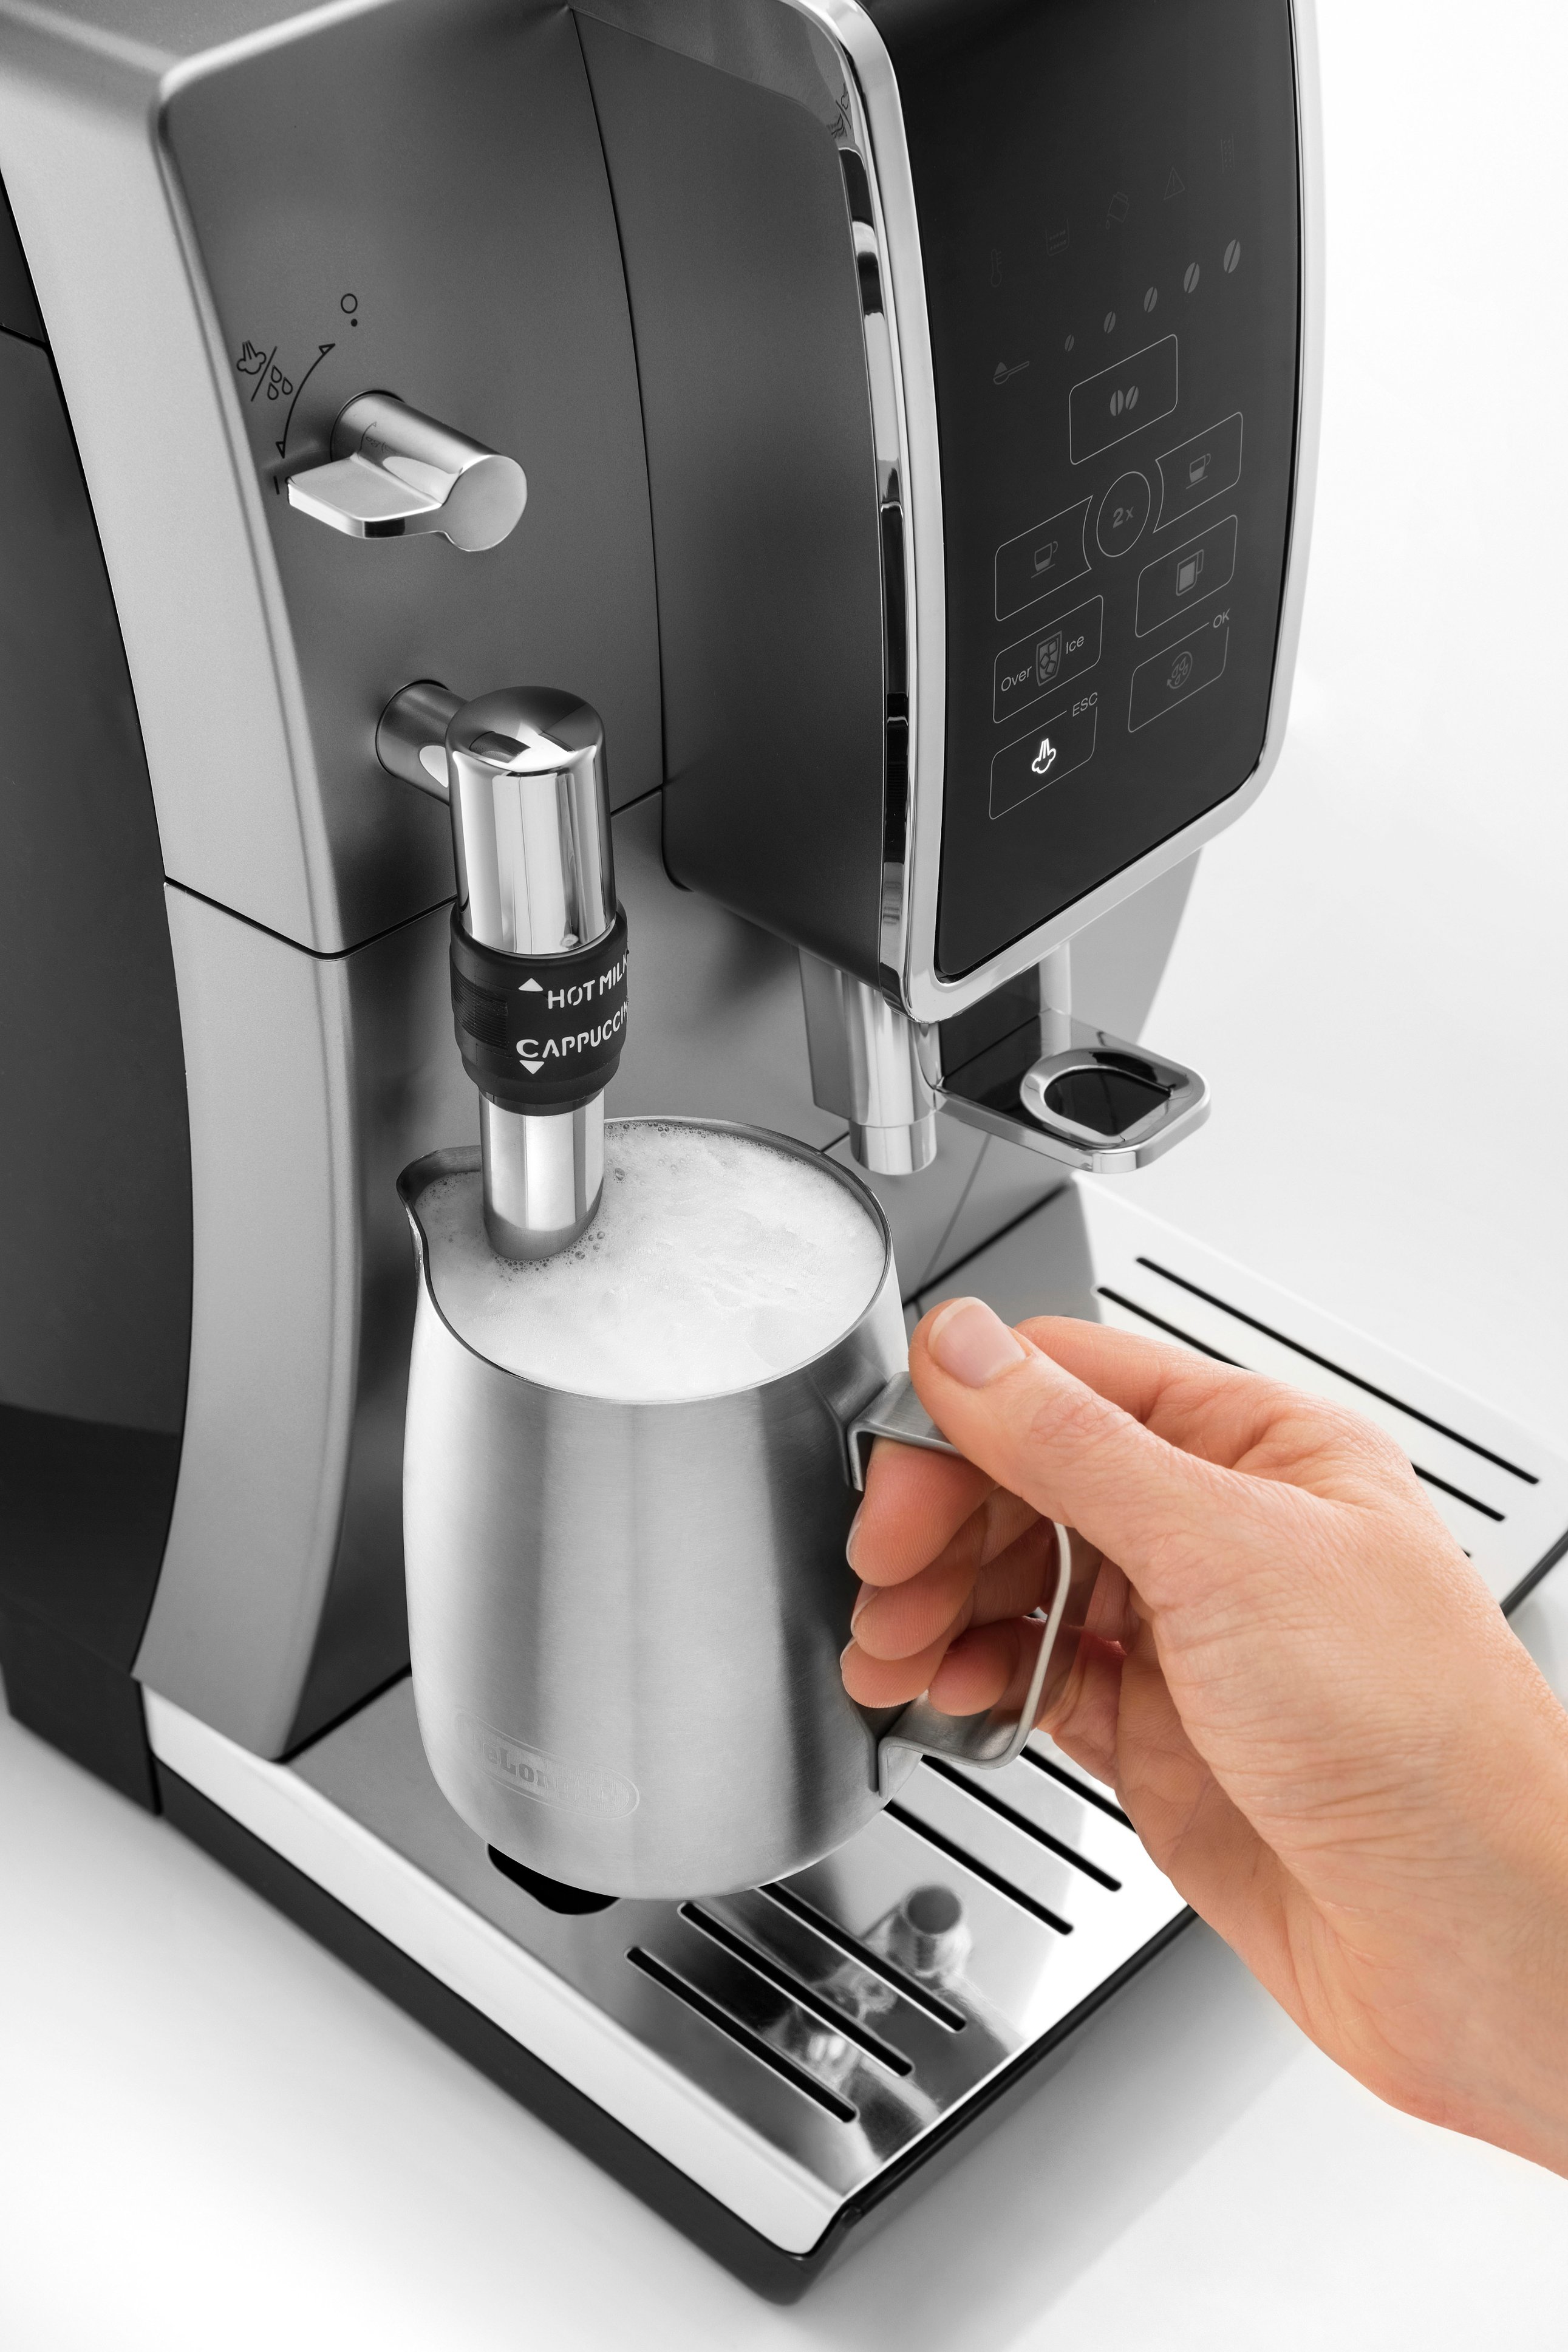 De'Longhi Dinamica - Máquina de café expreso, color blanco, preparación  automática de grano a taza, molinillo de rebabas de acero integrado y